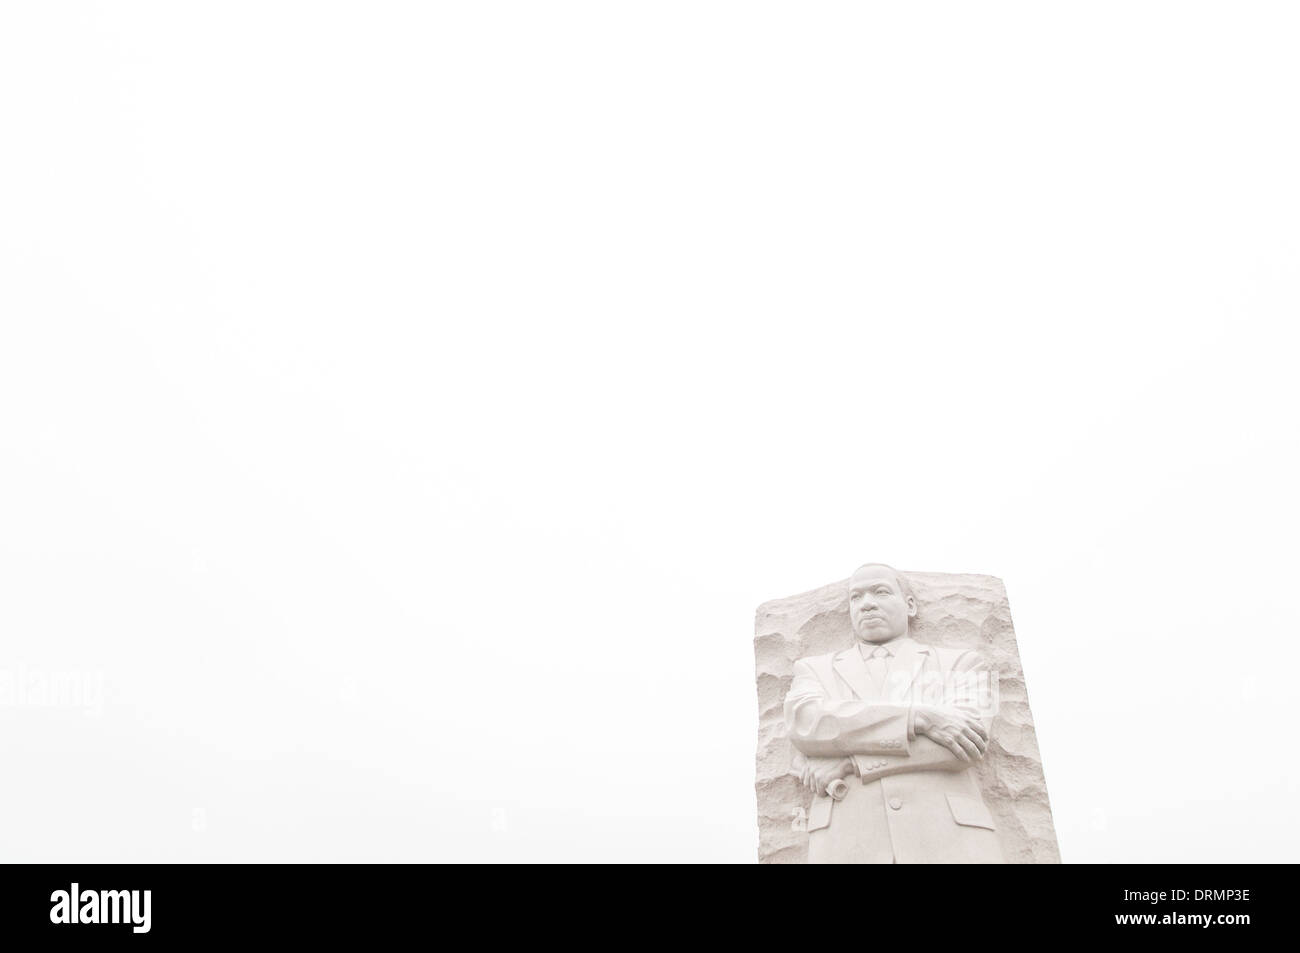 WASHINGTON DC, Stati Uniti d'America - dedicato il 16 ottobre 2011, il MLK Memorial commemora il leader dei diritti civili il dottor Martin Luther King Jr. cade su una linea diretta tra il Lincoln Memorial e il Jefferson Memorial e situato sulle rive del bacino di marea. Il pezzo forte è una statua di pietra scolpita da Lei Yixin su cui la figura del dottor re emerge da un blocco di pietra denominato la pietra della speranza. Ogni primavera la fioritura dei ciliegi sul Tidal Basin scoppiò in fiore. Foto Stock